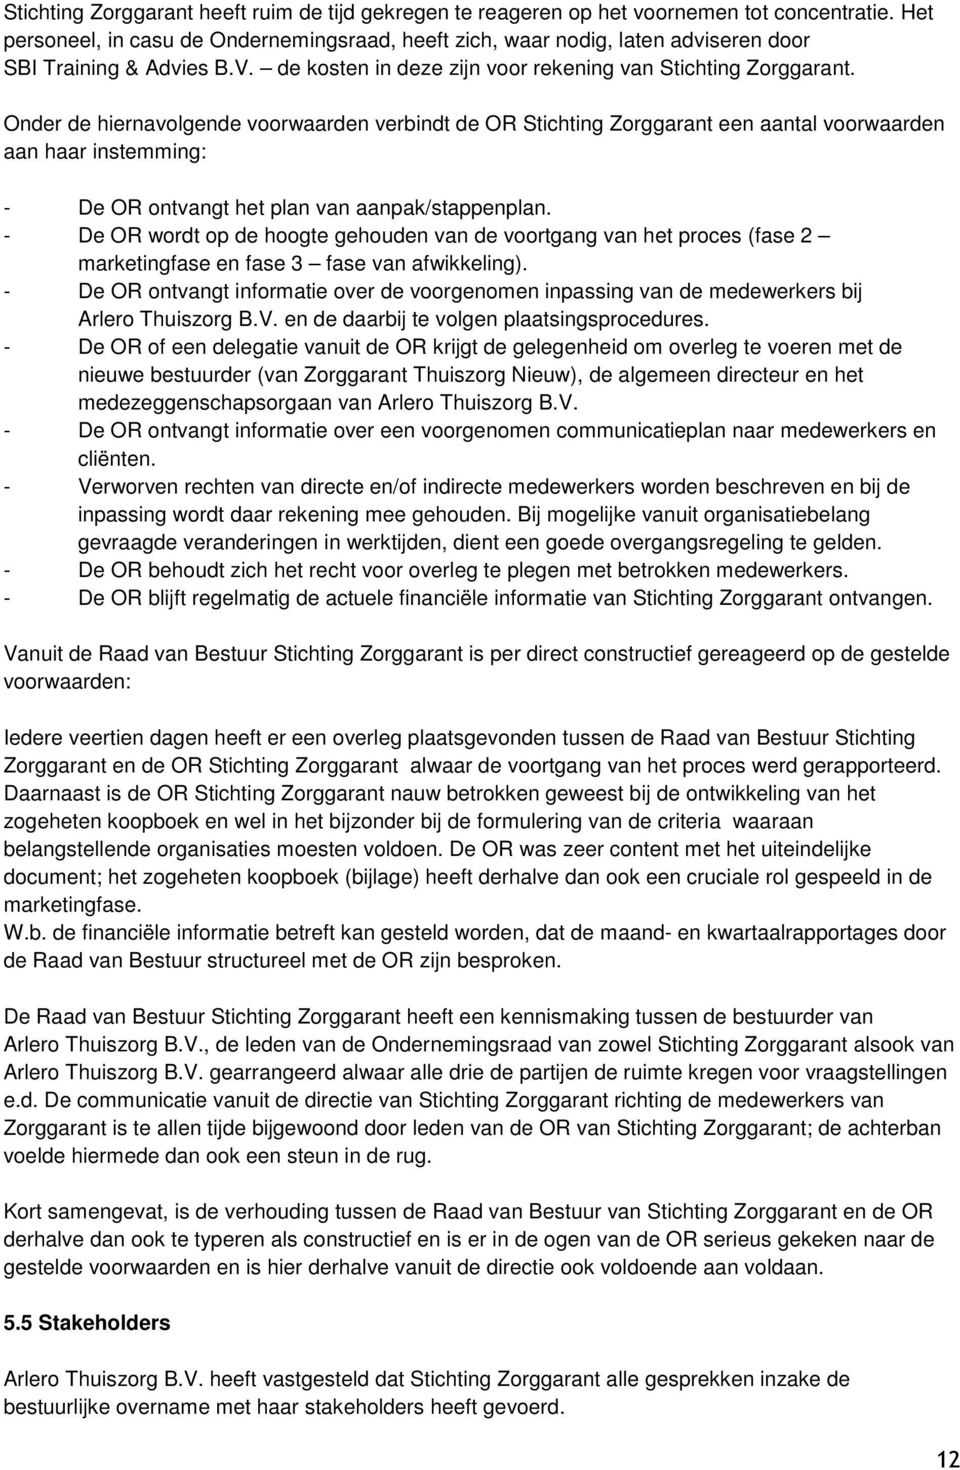 Onder de hiernavolgende voorwaarden verbindt de OR Stichting Zorggarant een aantal voorwaarden aan haar instemming: - De OR ontvangt het plan van aanpak/stappenplan.